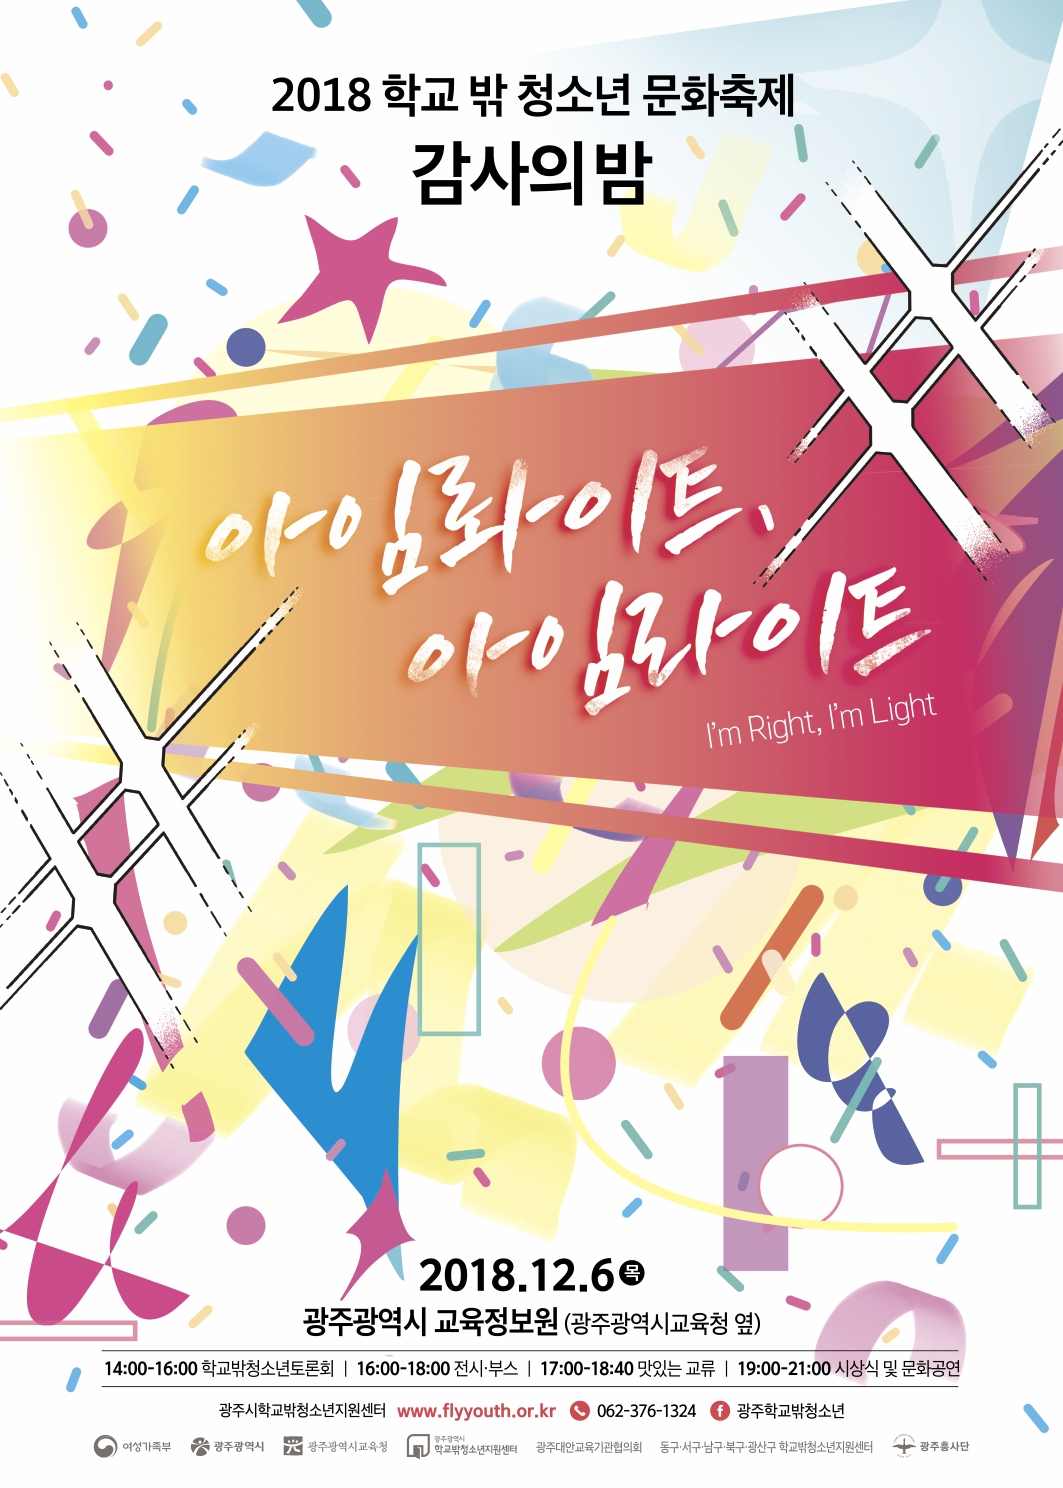 ‘2018 학교 밖 청소년 문화축제 감사의 밤’ 개최